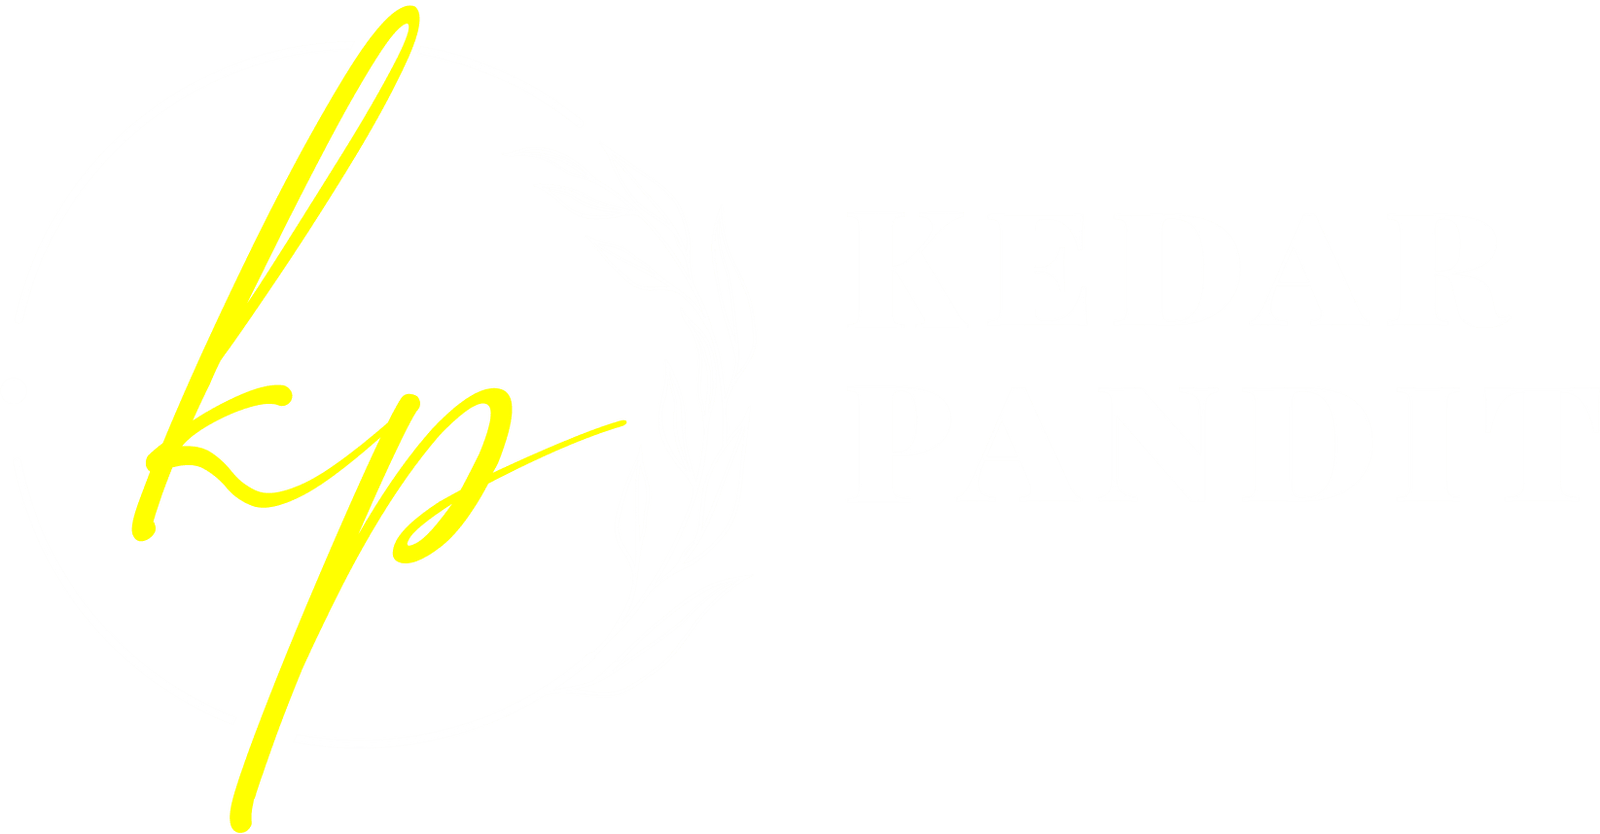 kedar pandit white